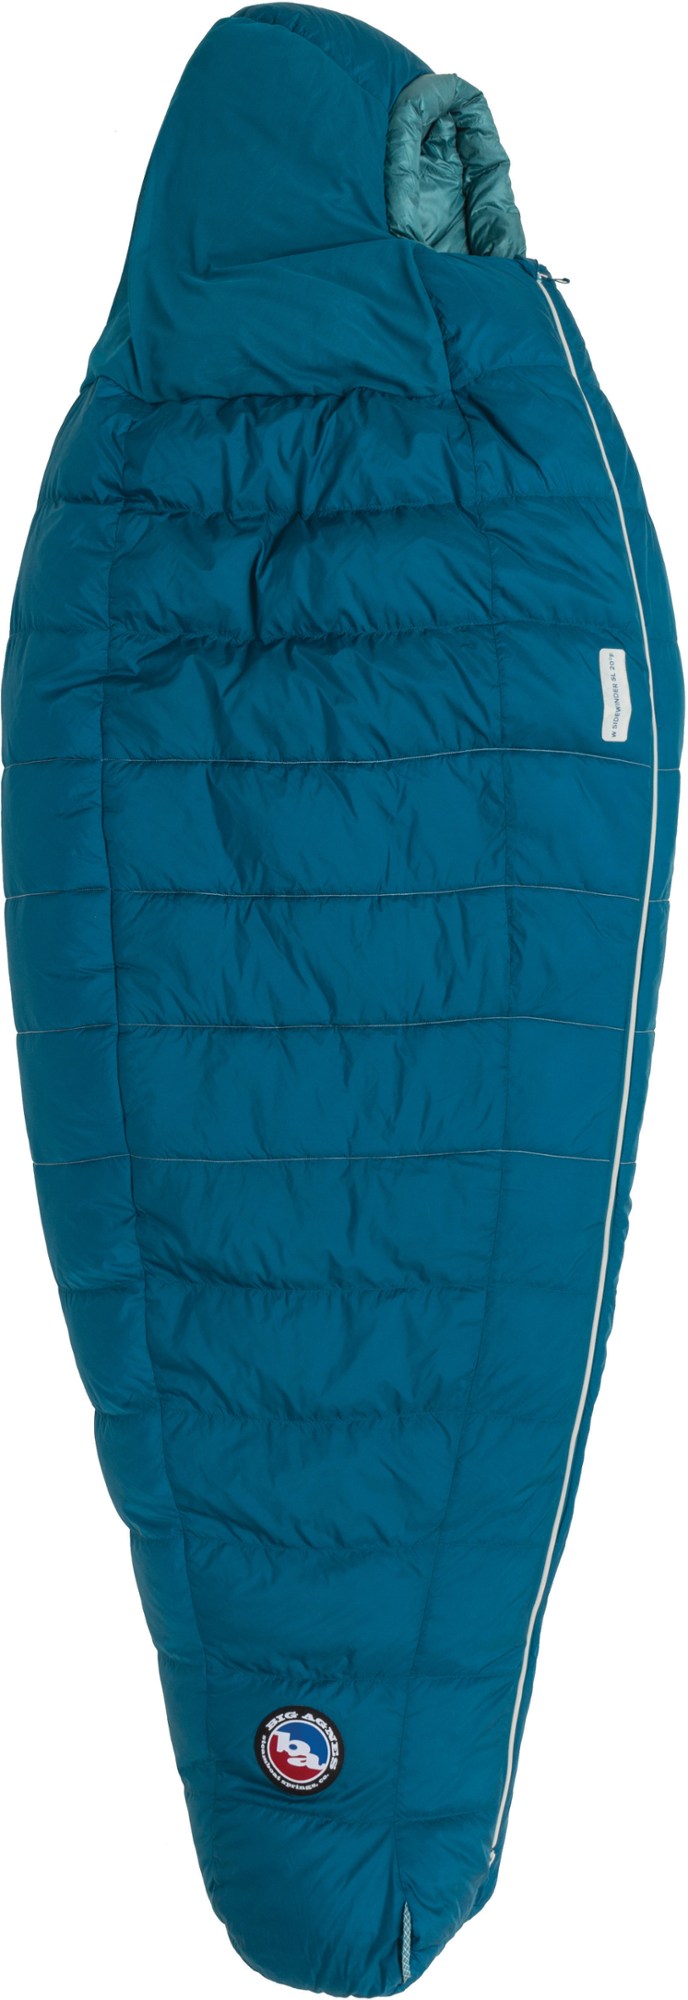 спальный мешок echo park 0 big agnes зеленый Спальный мешок Sidewinder SL 35 — женский Big Agnes, синий